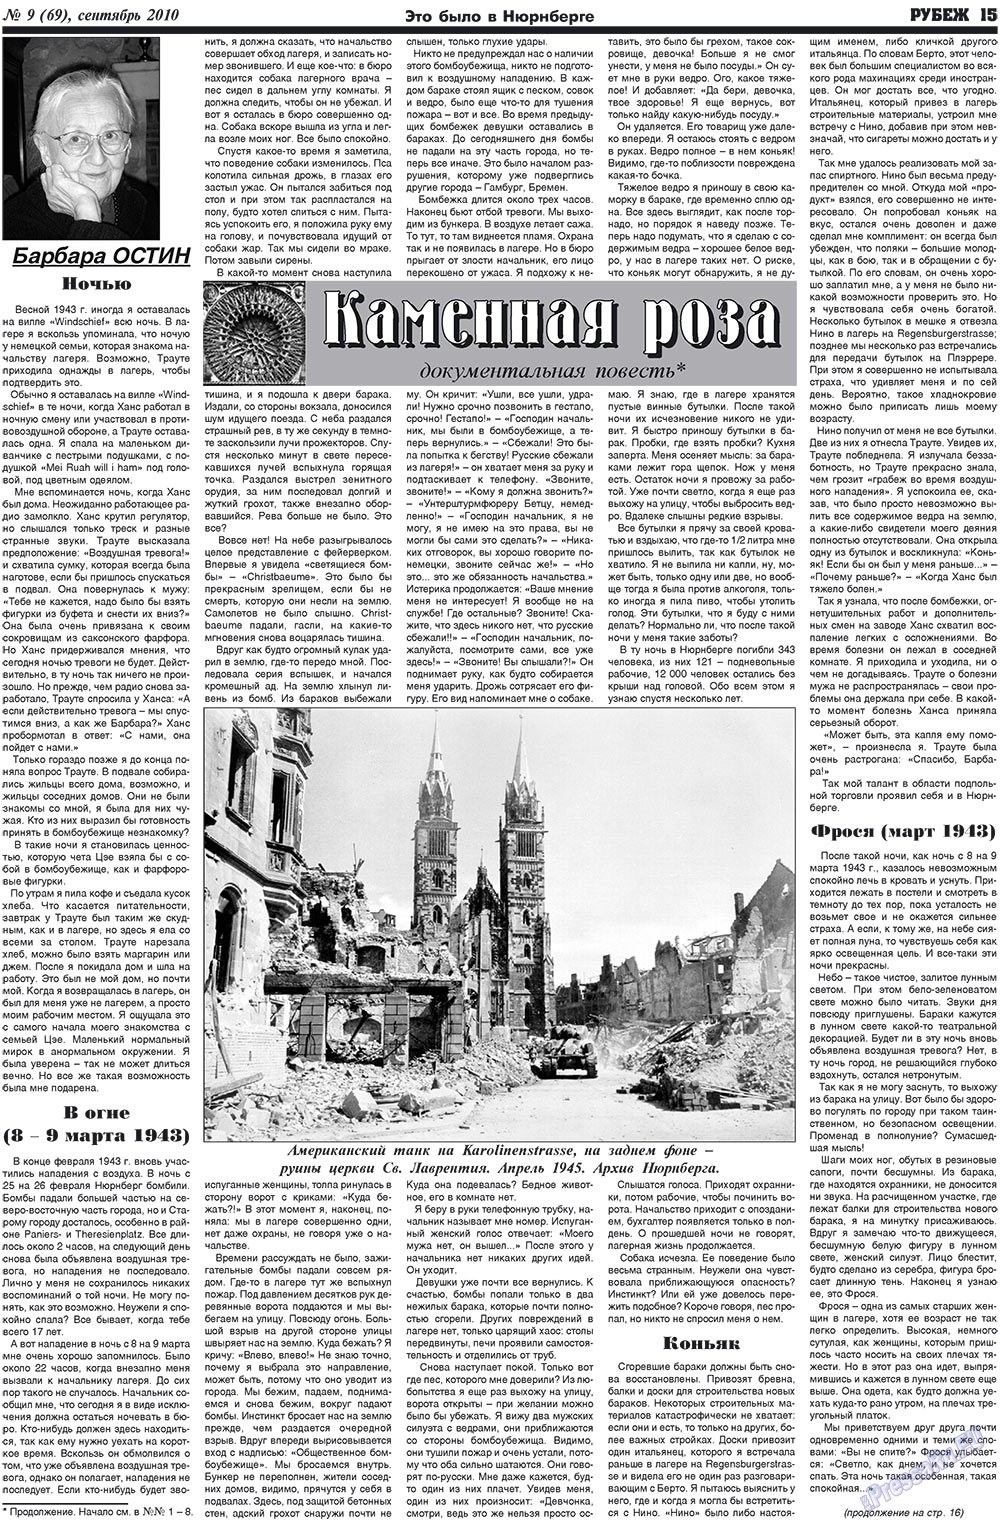 Рубеж (газета). 2010 год, номер 9, стр. 15